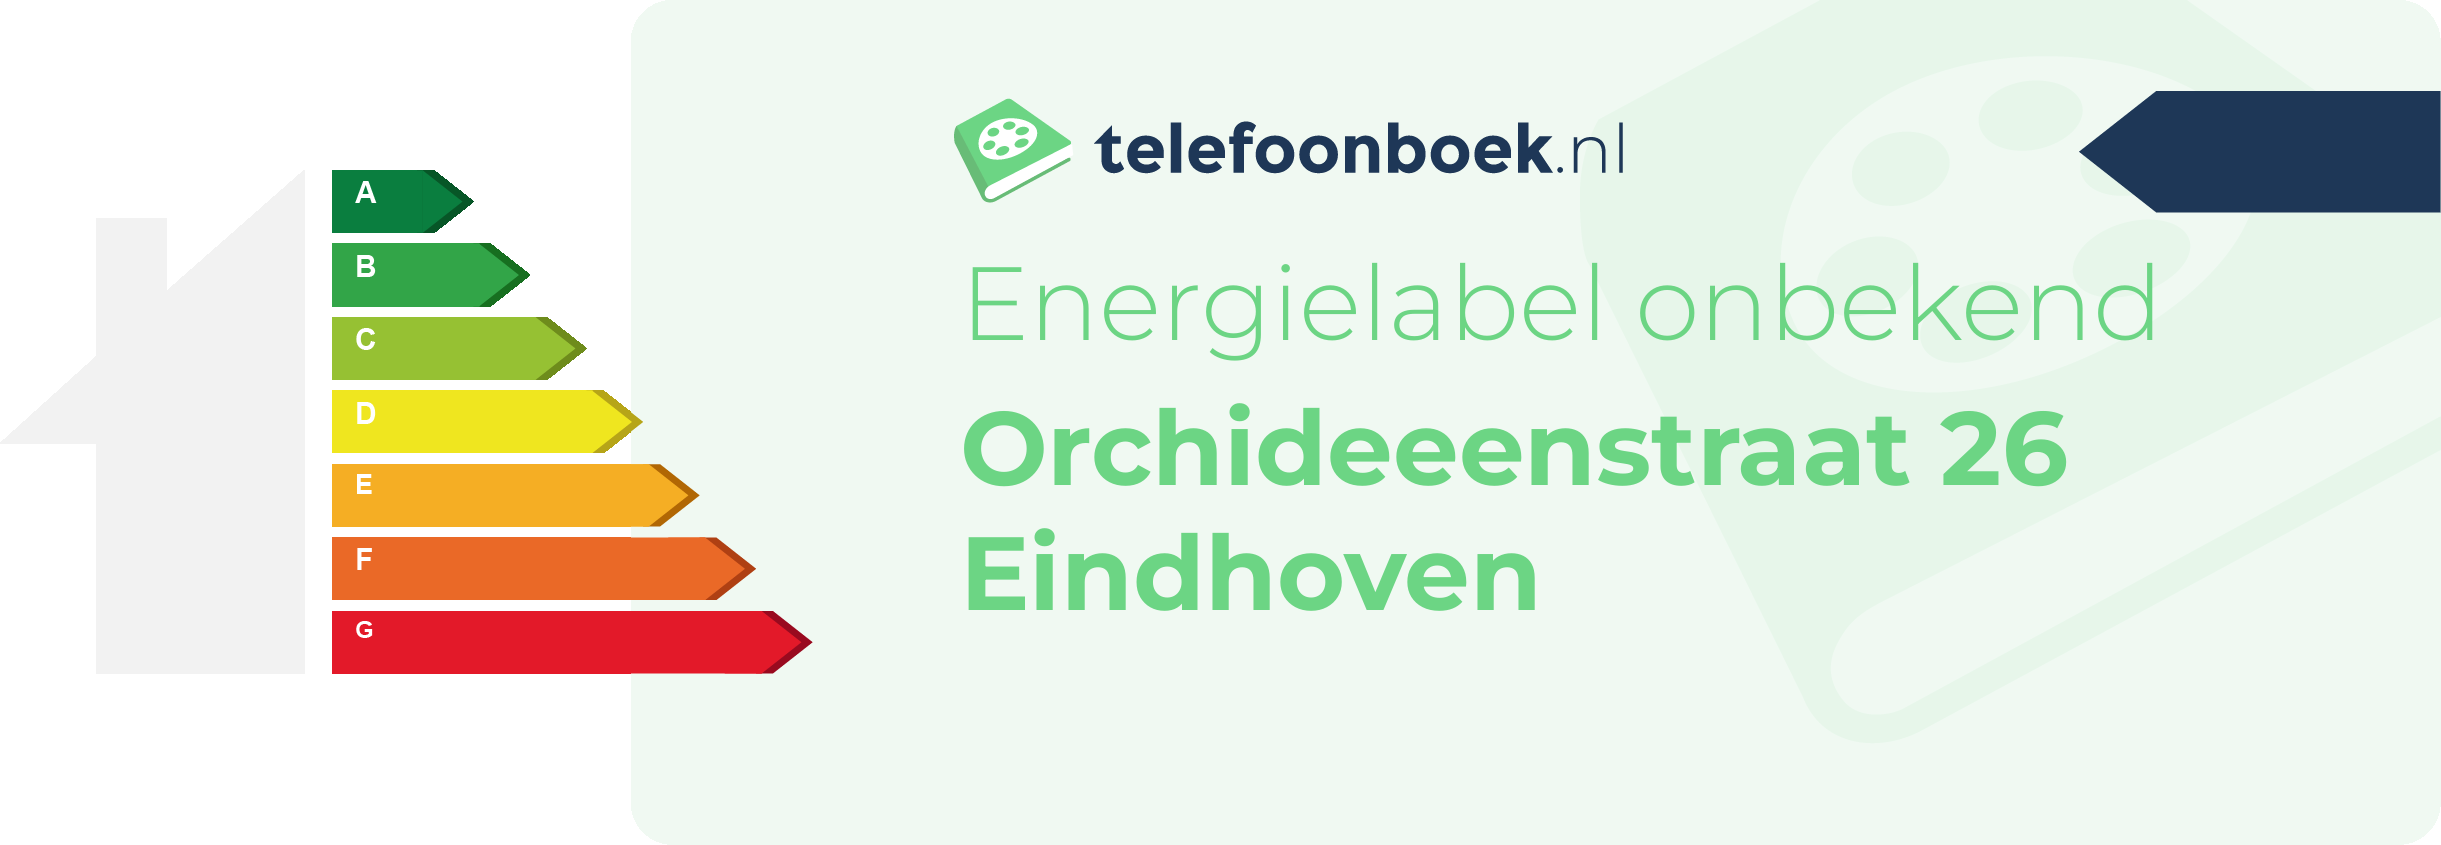 Energielabel Orchideeenstraat 26 Eindhoven